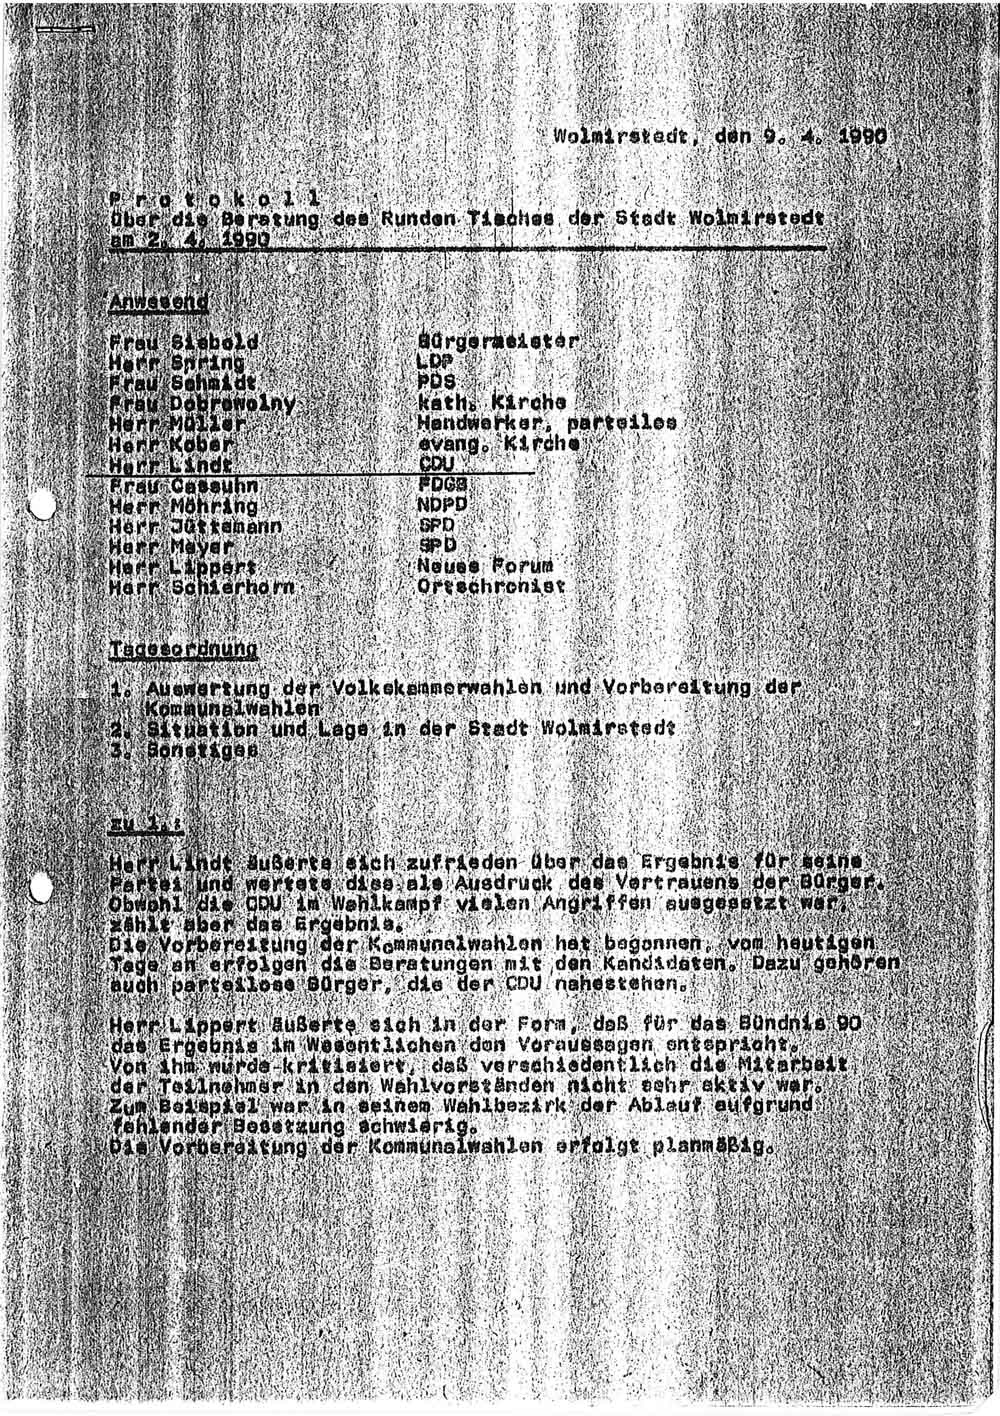 Protokoll Sitzung Runder Tisch Wolmirstedt, 02.04.1990 (Museum Wolmirstedt RR-F)